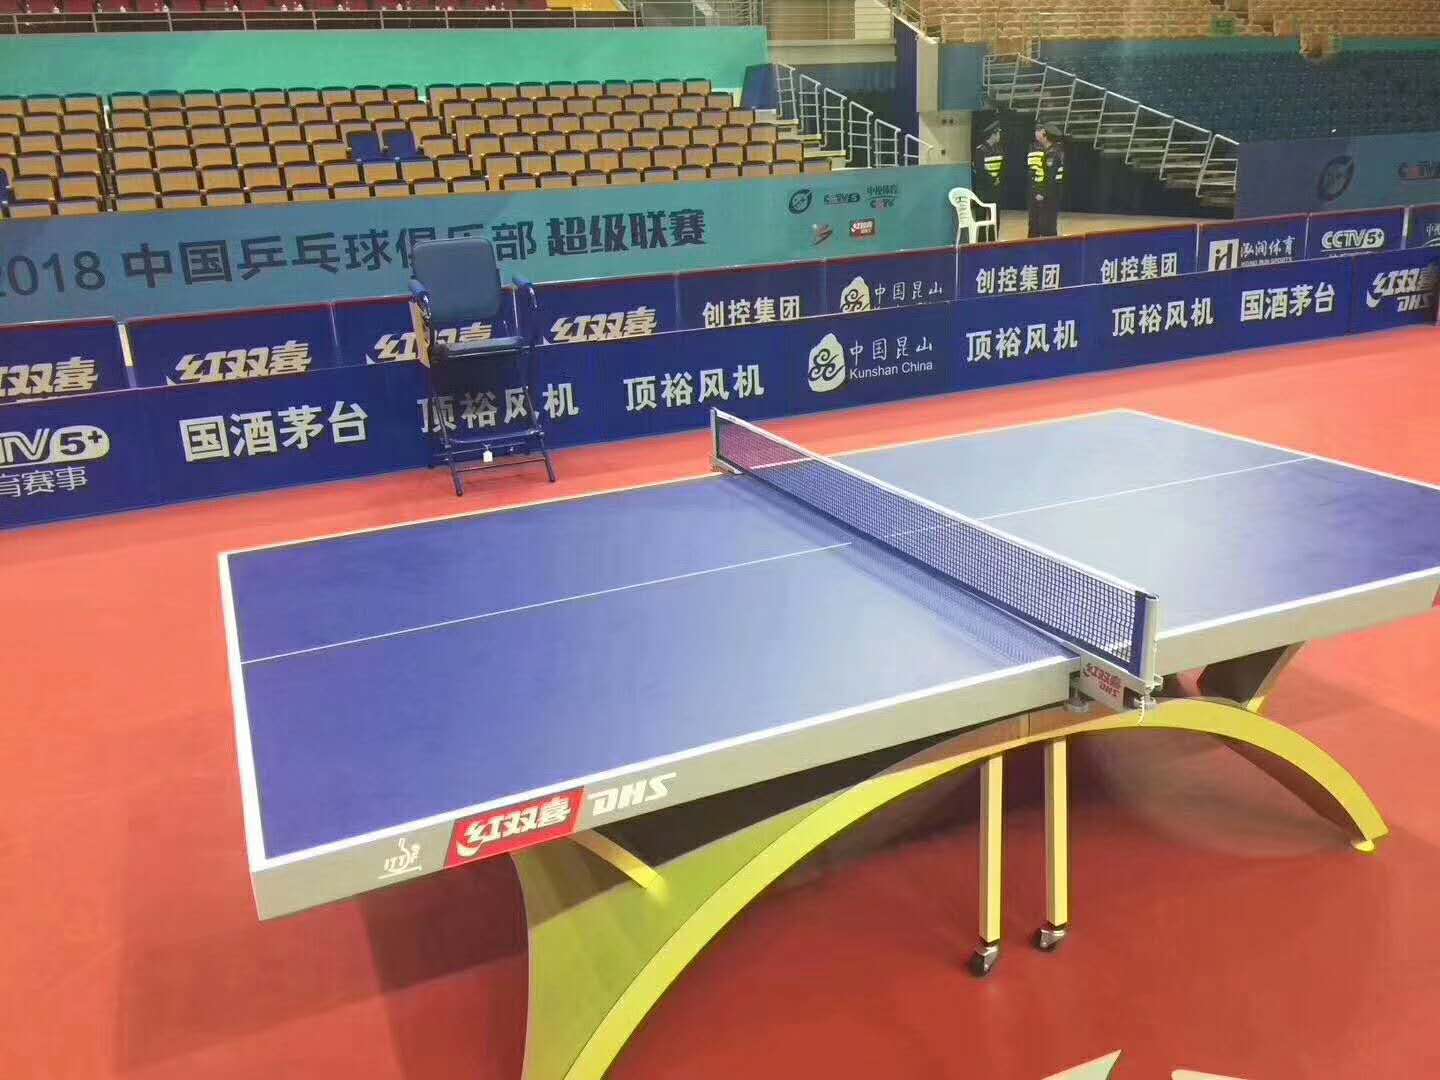 苏州顶裕节能设备有限公司赞助中国乒乓球全民健身体育活动